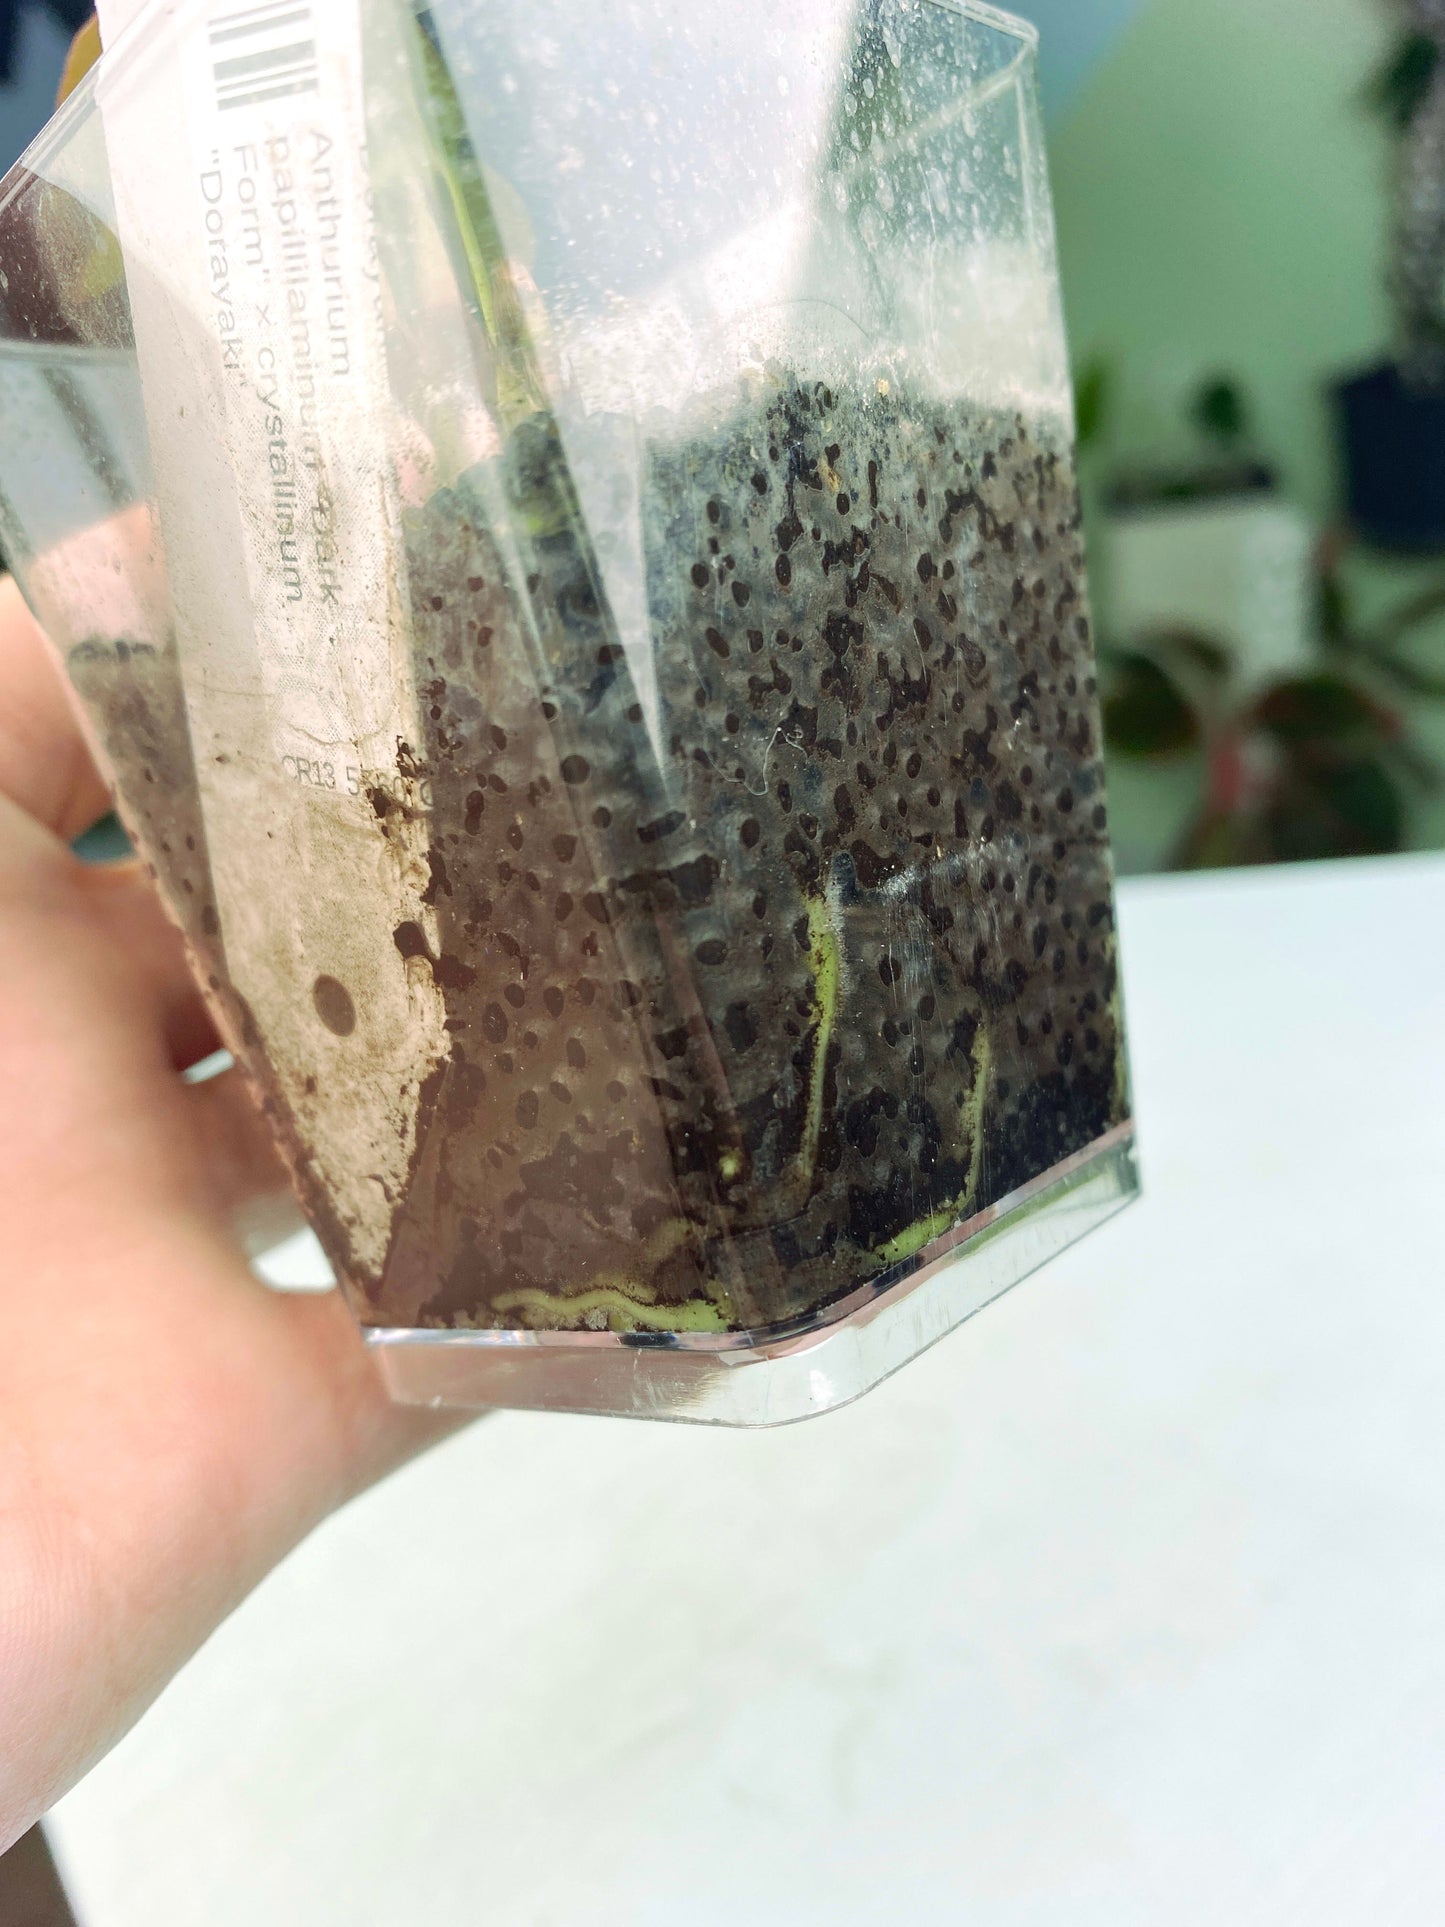 Anthurium papillilaminum "Dark Form" × crystallinum "Dorayaki" (3:T2) [1386] | Rare Aroid | Exact Plant